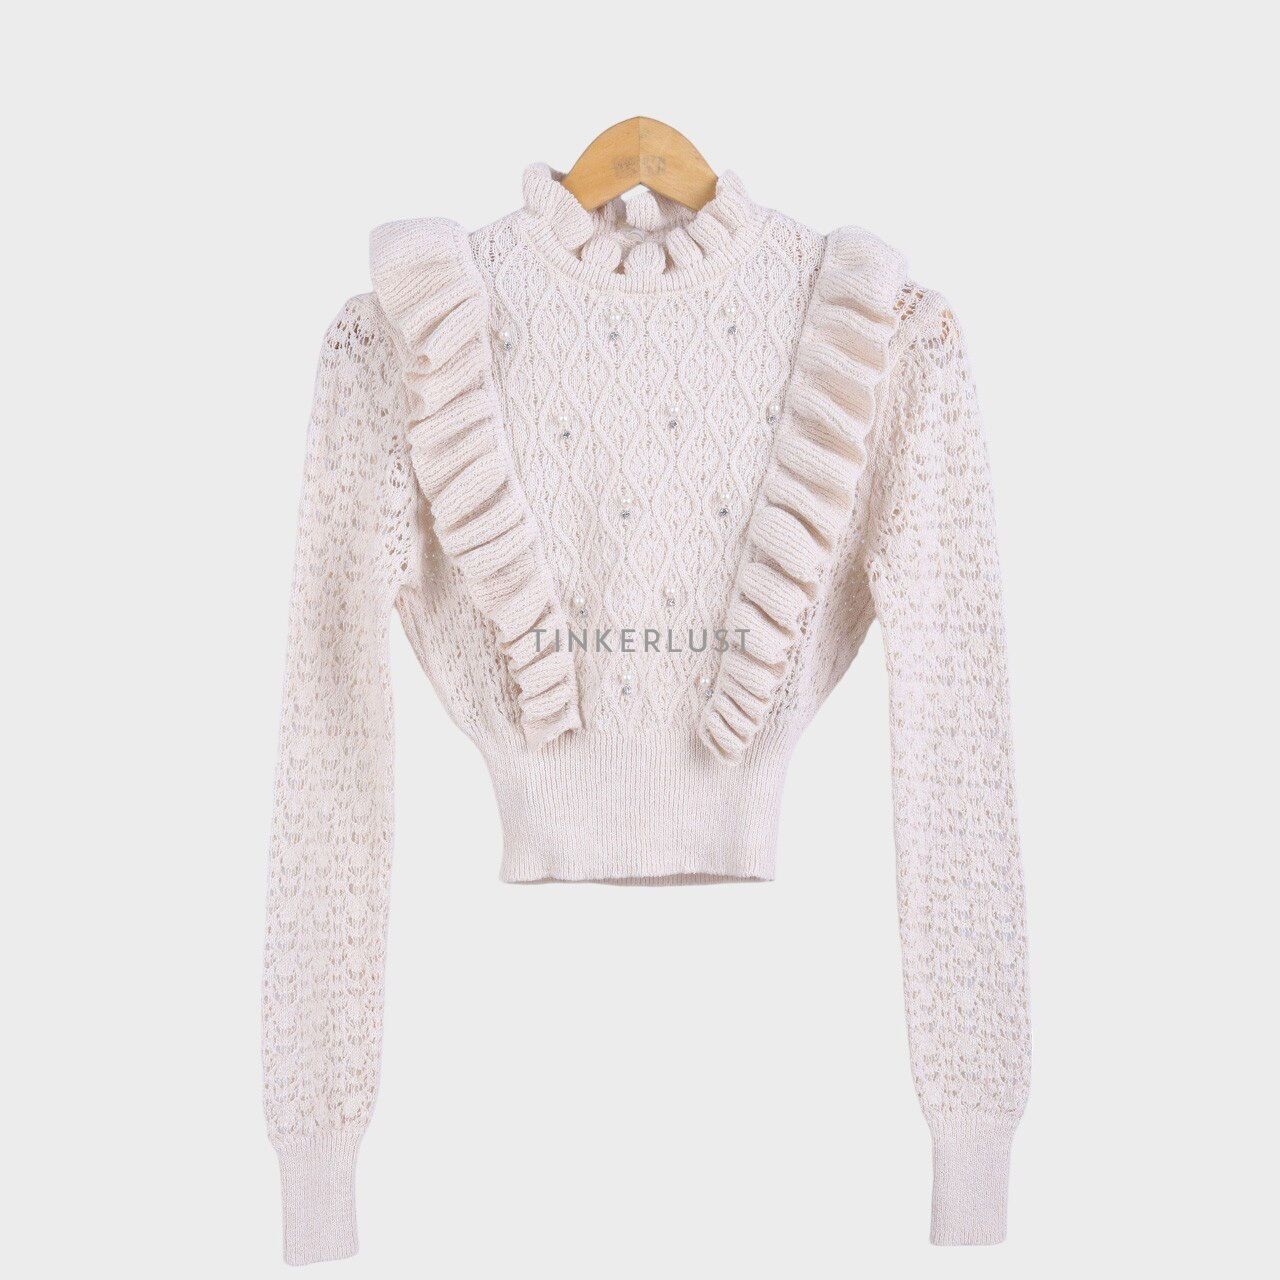 Zara Light Beige Ruffle Knit Pearl Sweater